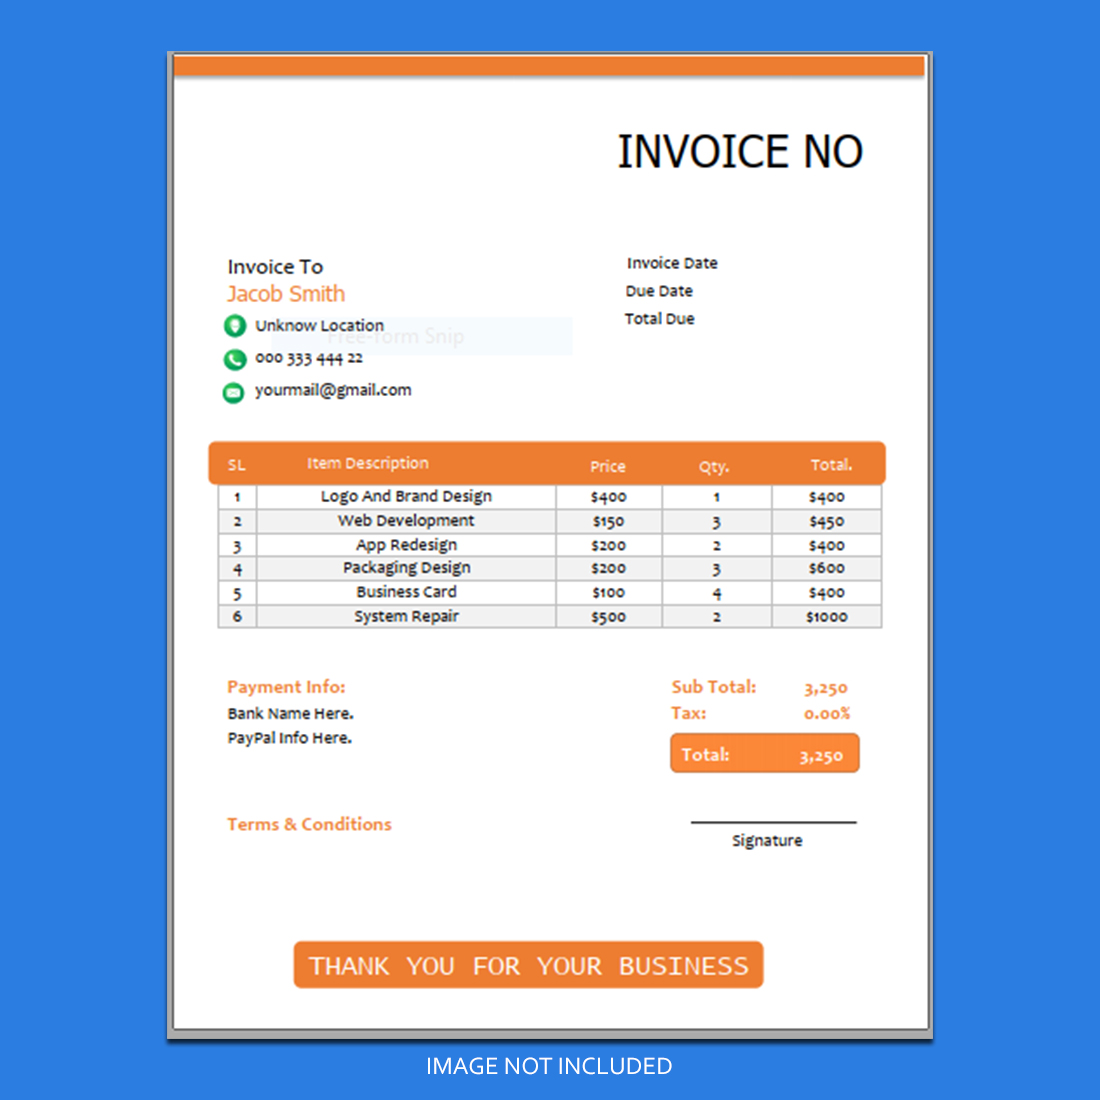 Invoice design preview image.